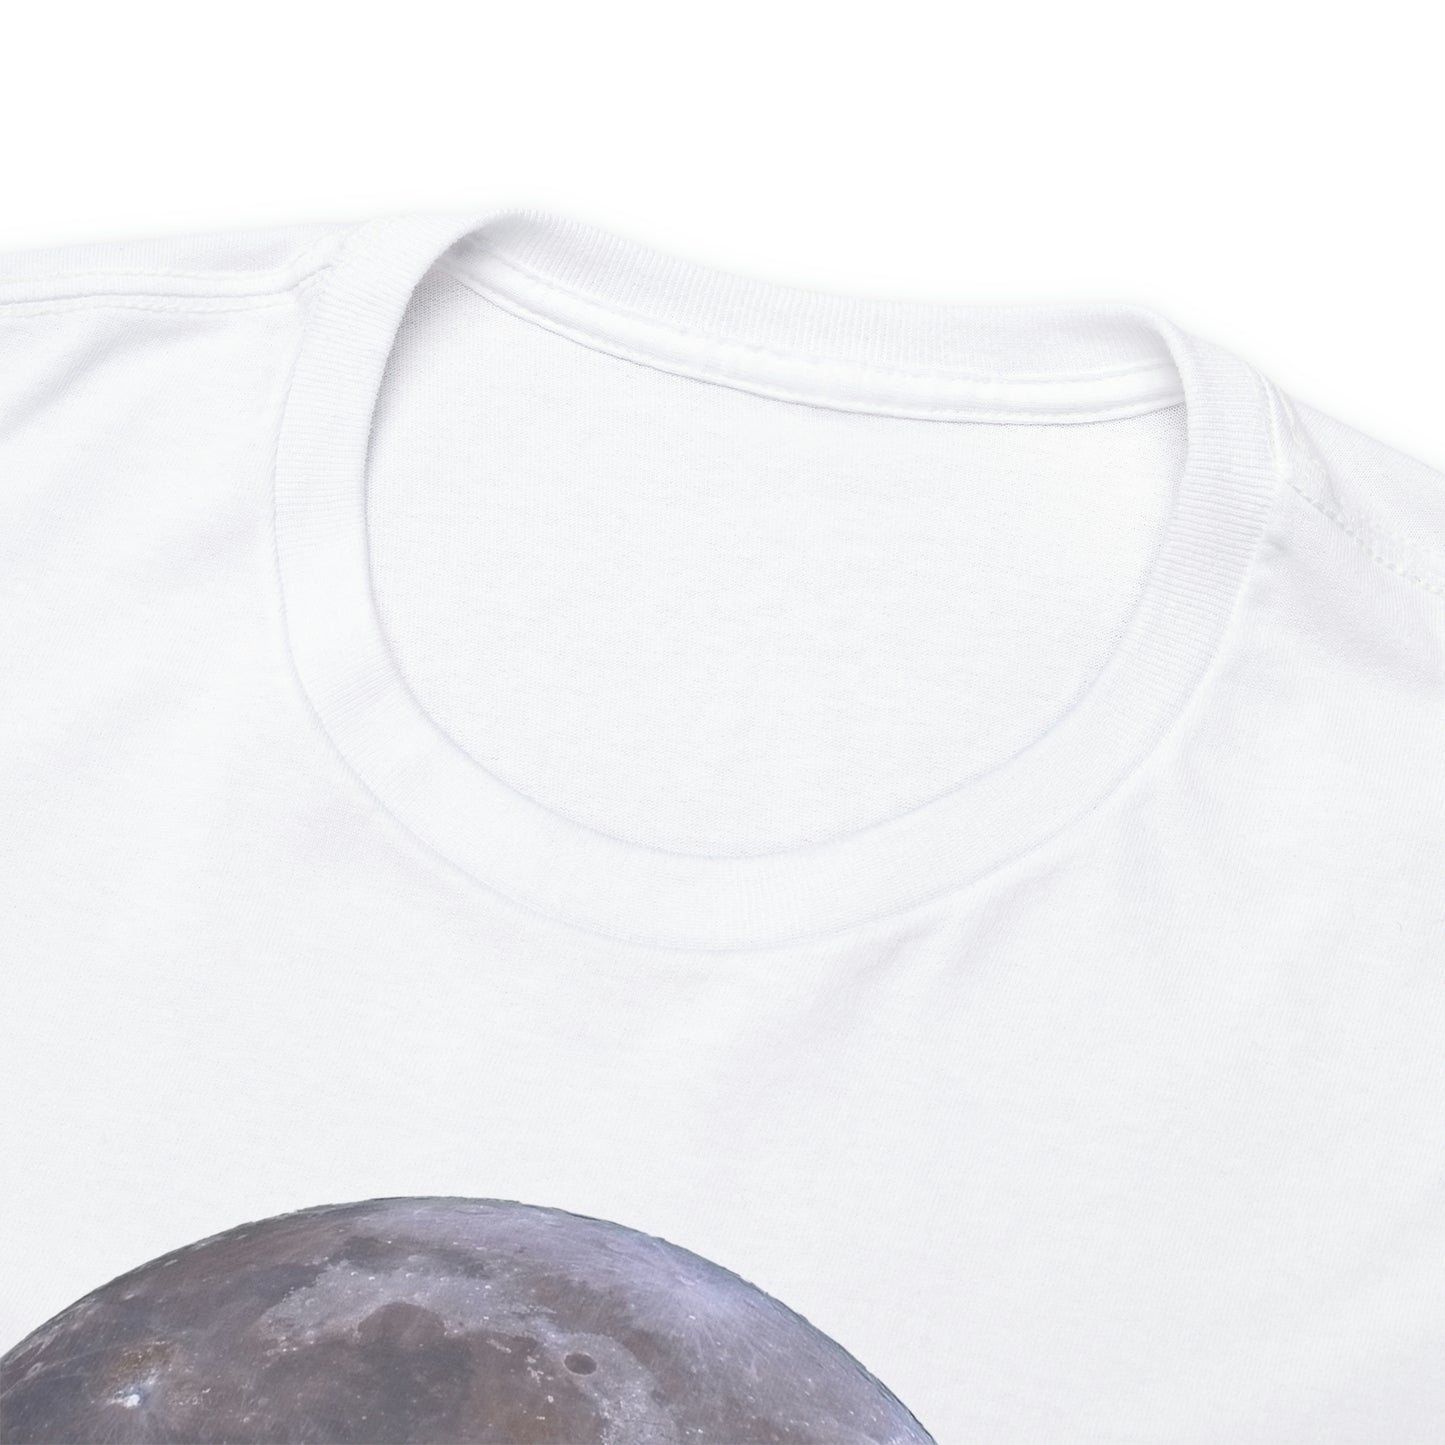 Full Moon Astronomy Tshirt - Telescope Back Design